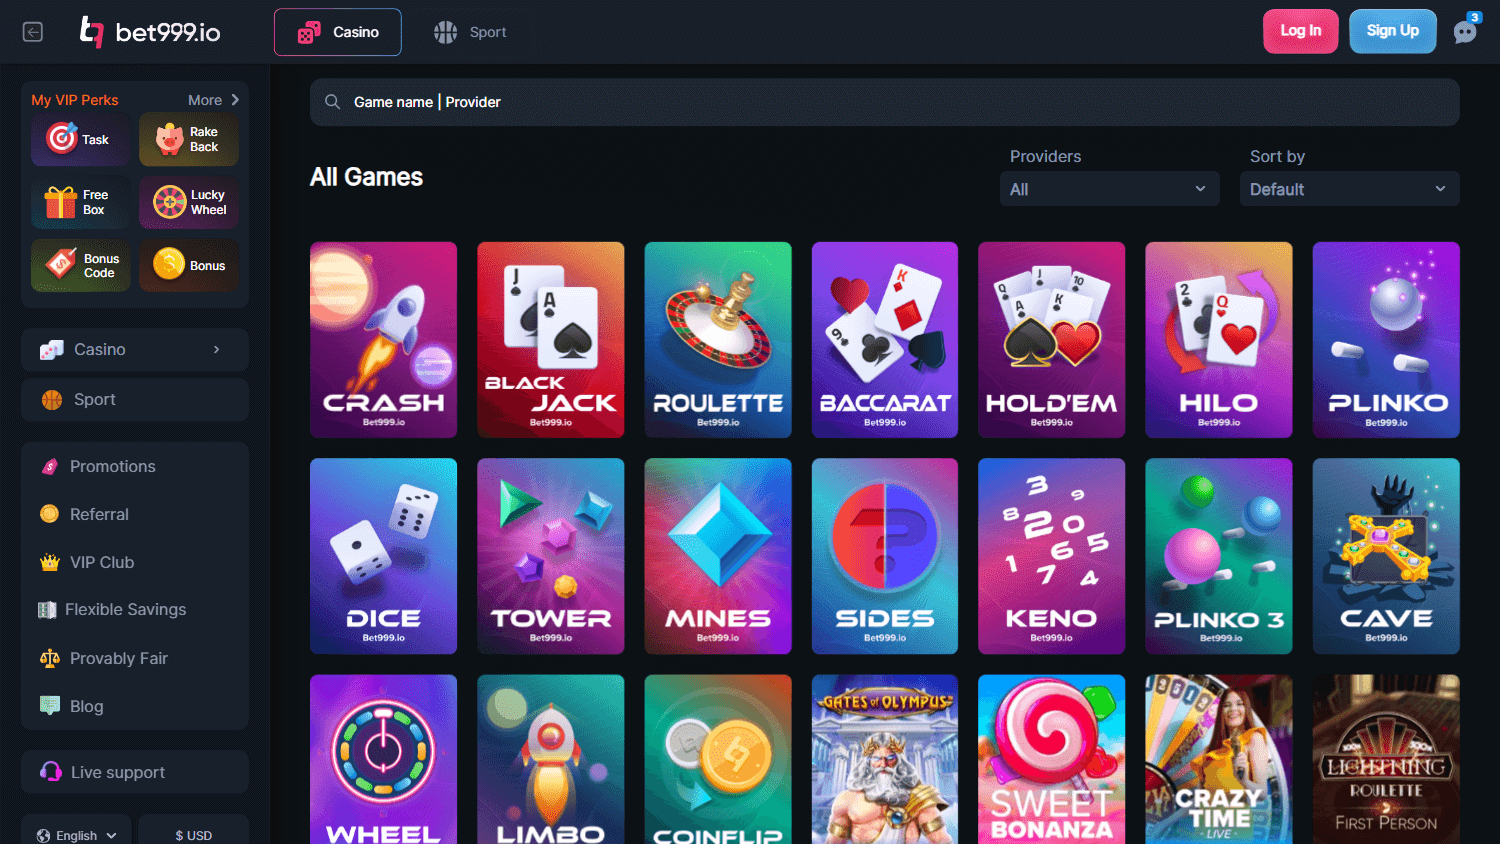 bet999_casino_game_gallery_desktop